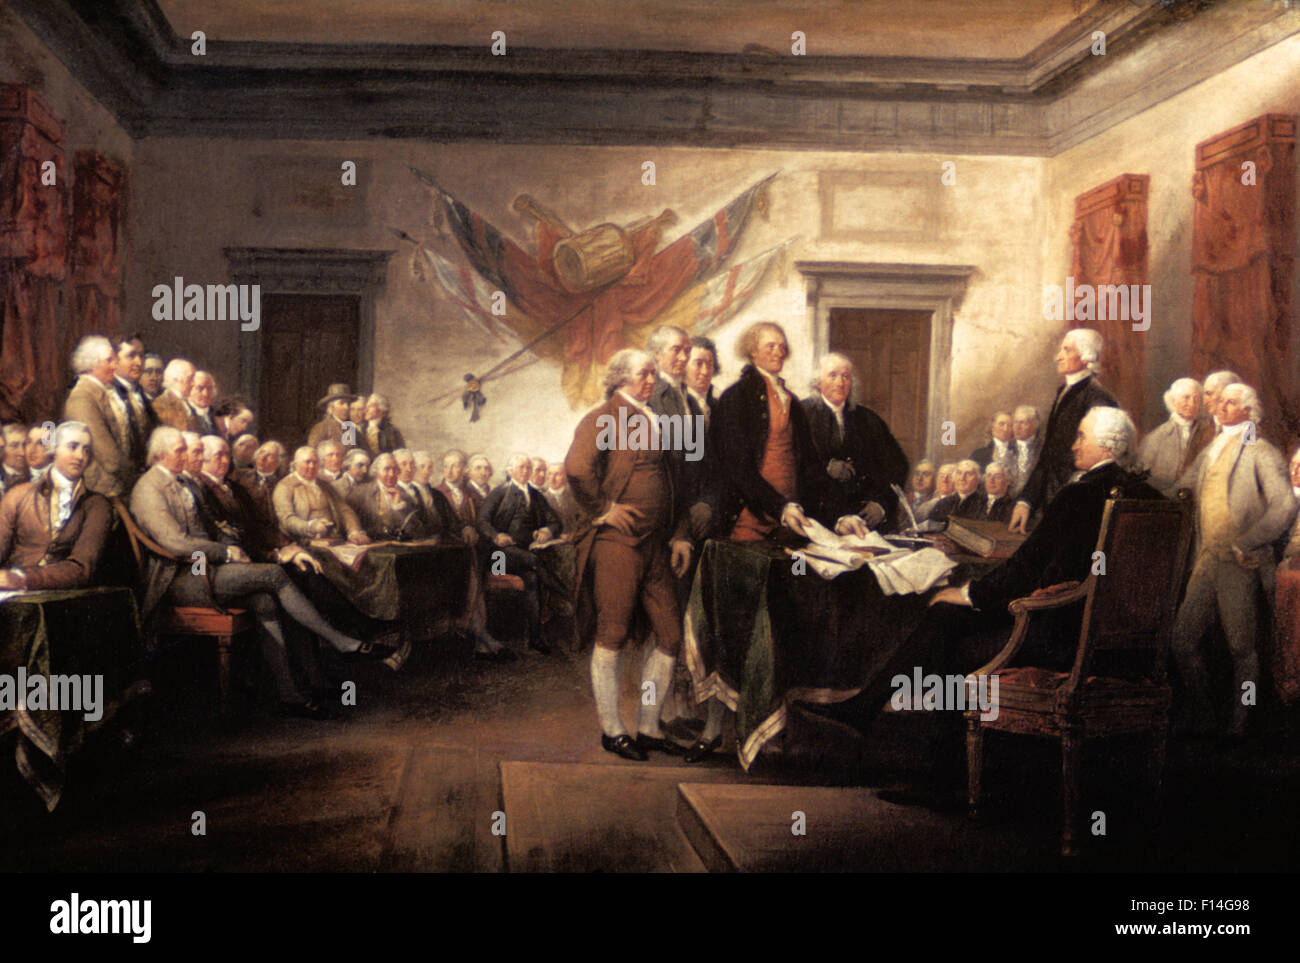 1776 Signature DÉCLARATION D'INDÉPENDANCE PAR TRUMBULL EN ÉTAT DE PENNSYLVANIE maintenant l'Independence Hall de Philadelphie, en Pennsylvanie, USA Banque D'Images